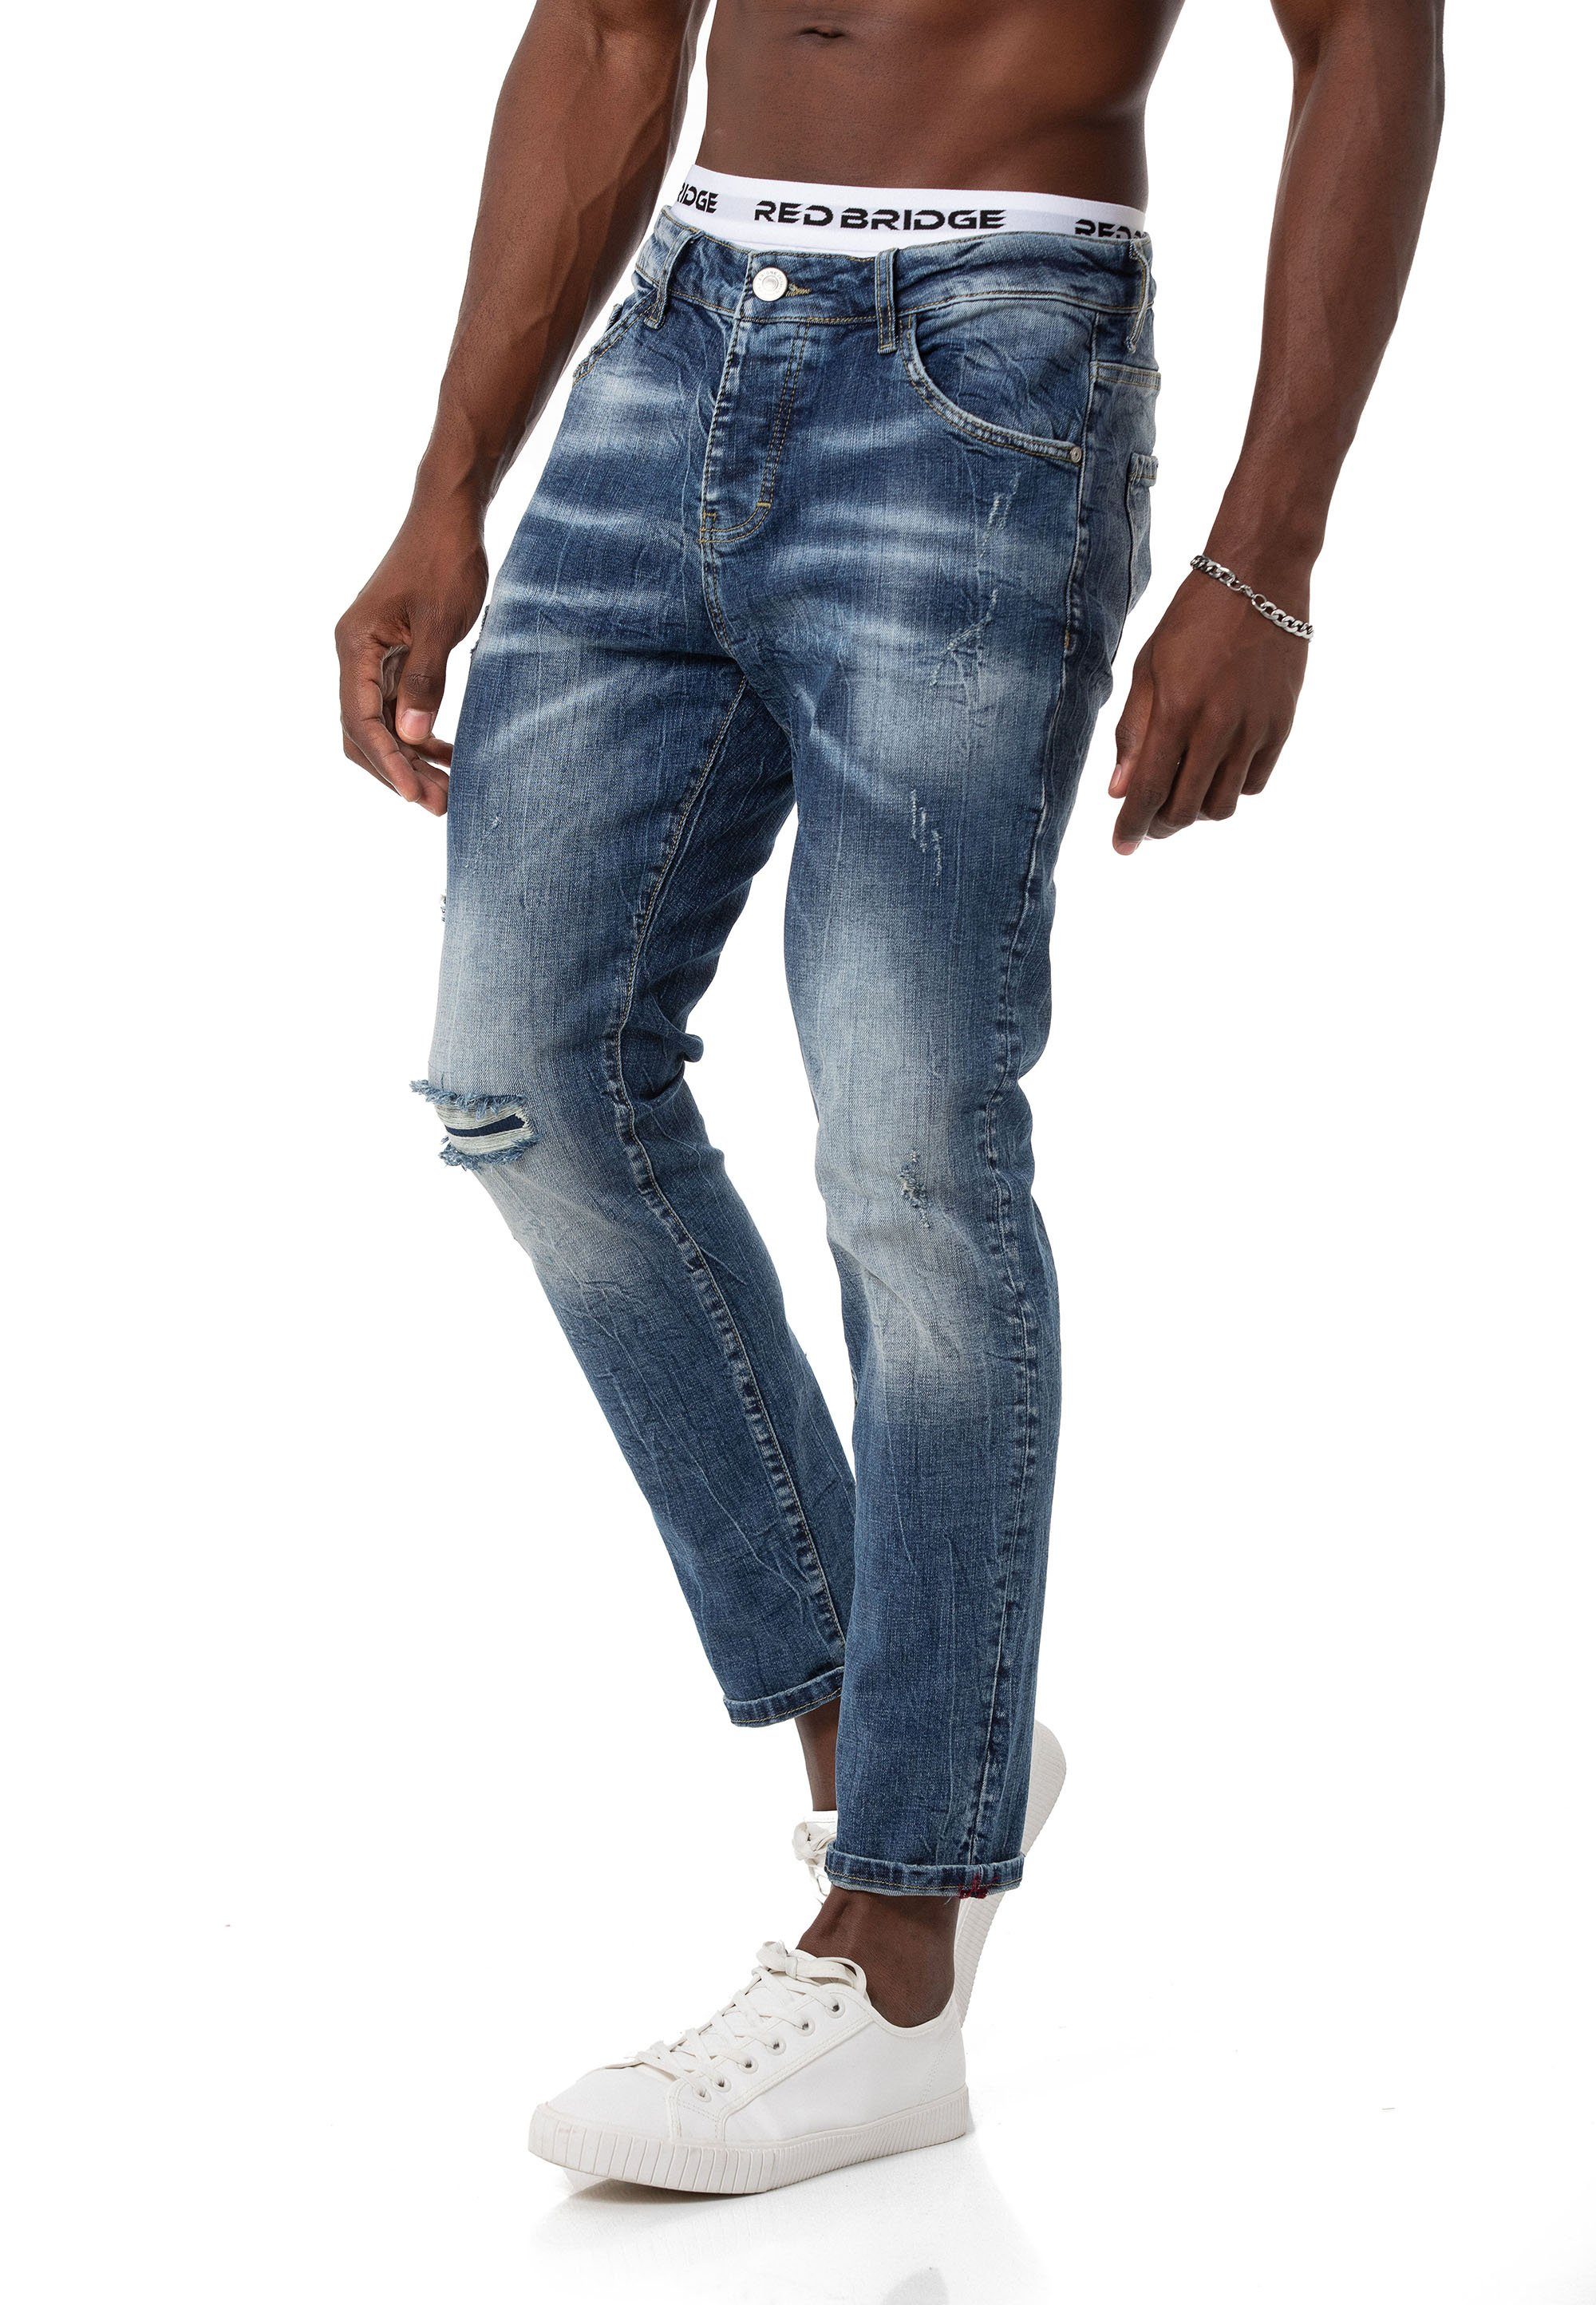 Denim Leg Pants RedBridge Blau Slim-fit-Jeans Straight Hose Distressed-Look